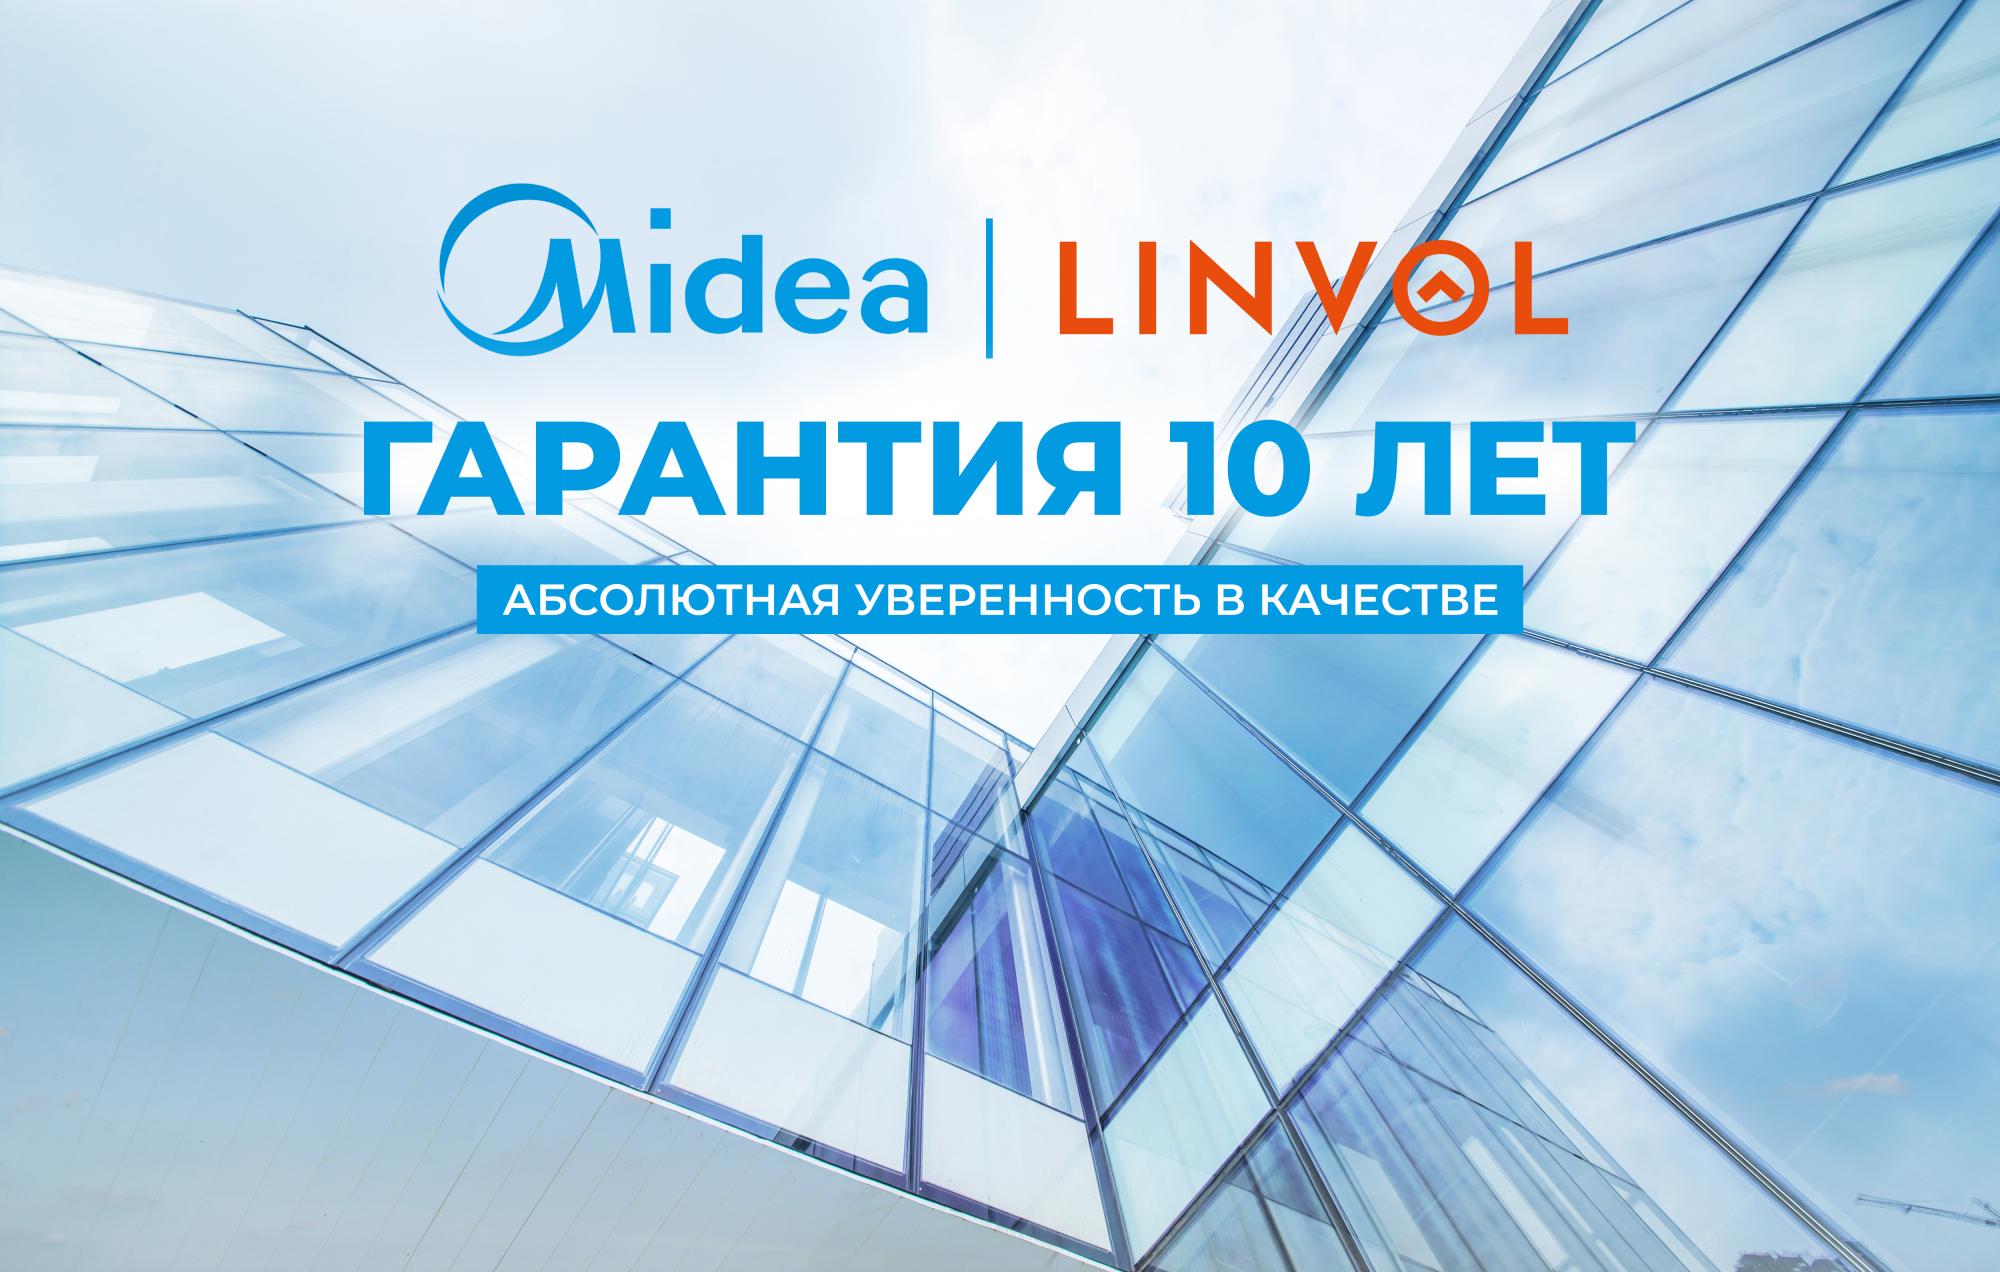 Надежность на новом уровне: Midea предлагает беспрецедентную гарантию на лифты - 10 лет